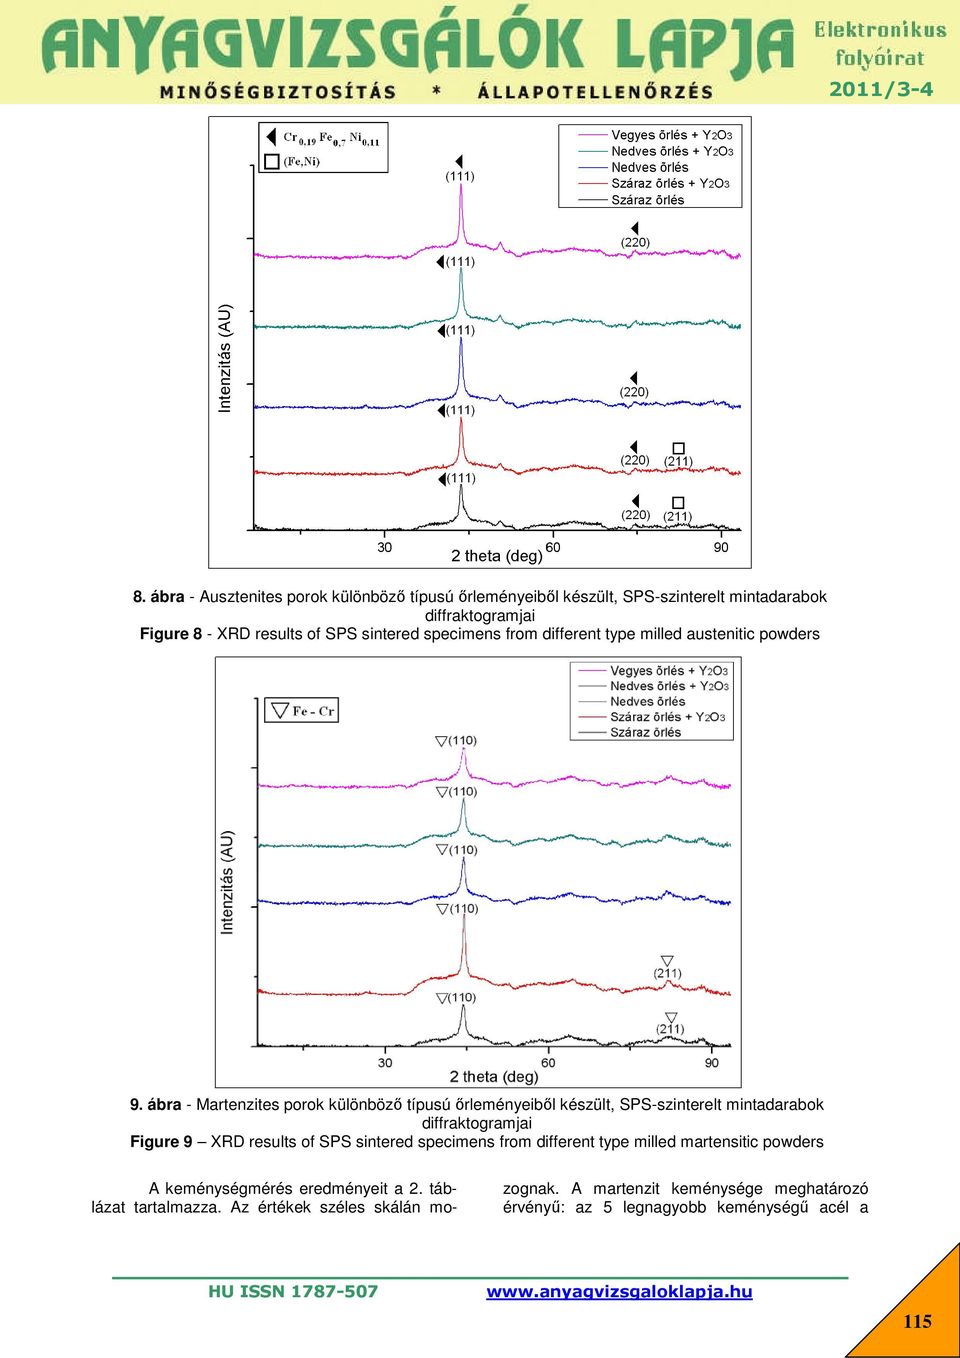 ábra - Martenzites porok különböző típusú őrleményeiből készült, SPS-szinterelt mintadarabok diffraktogramjai Figure 9 XRD results of SPS sintered